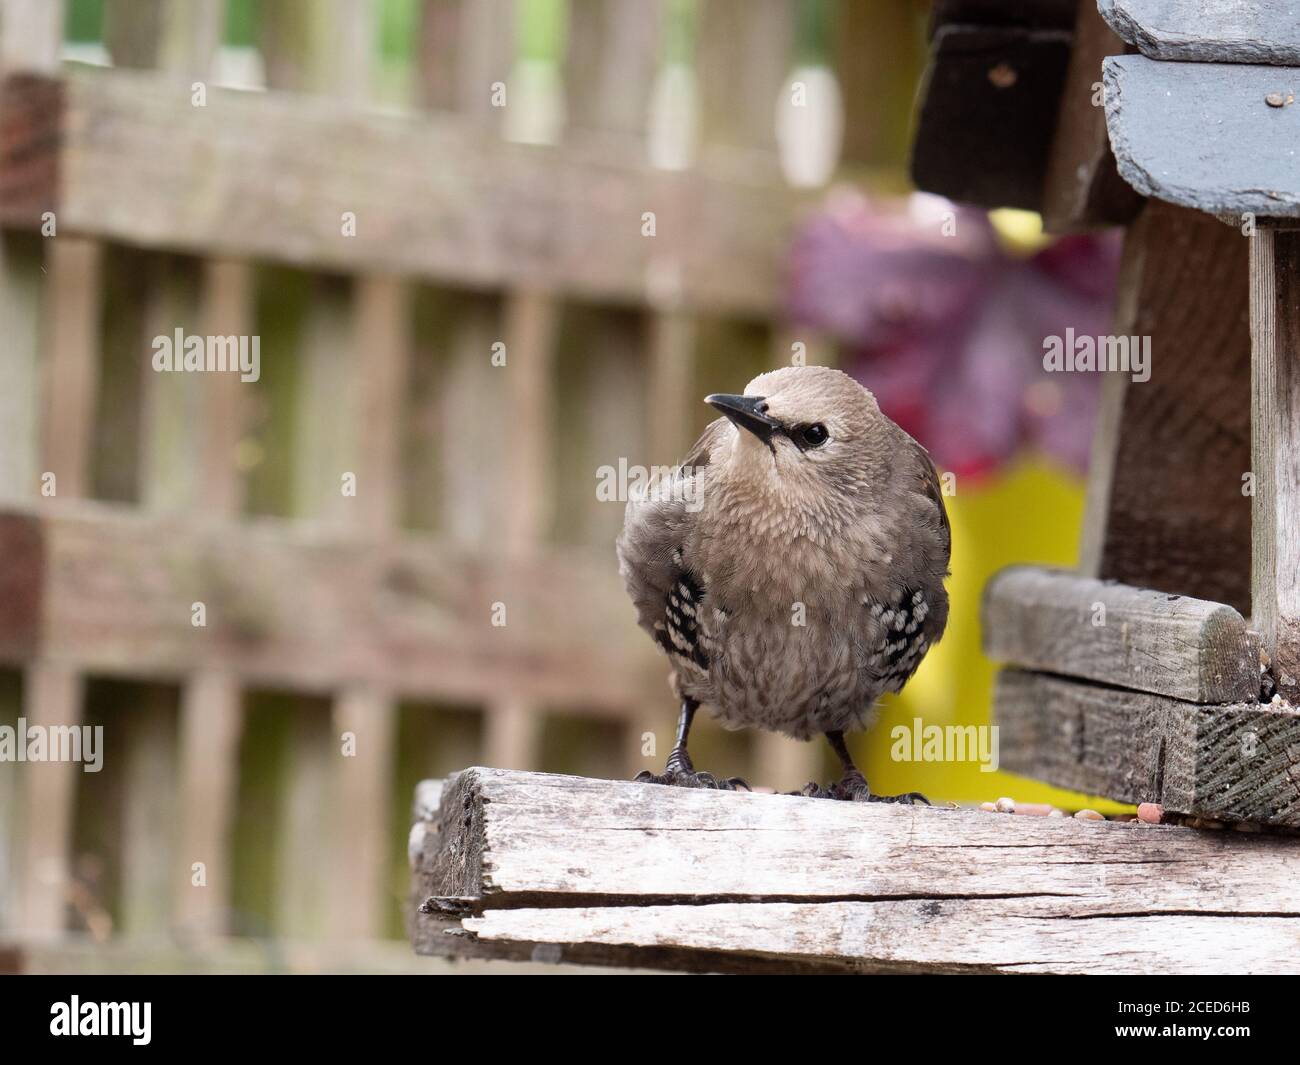 Immature Starling (Sturnus vulgaris) on home bird feeder. Stock Photo